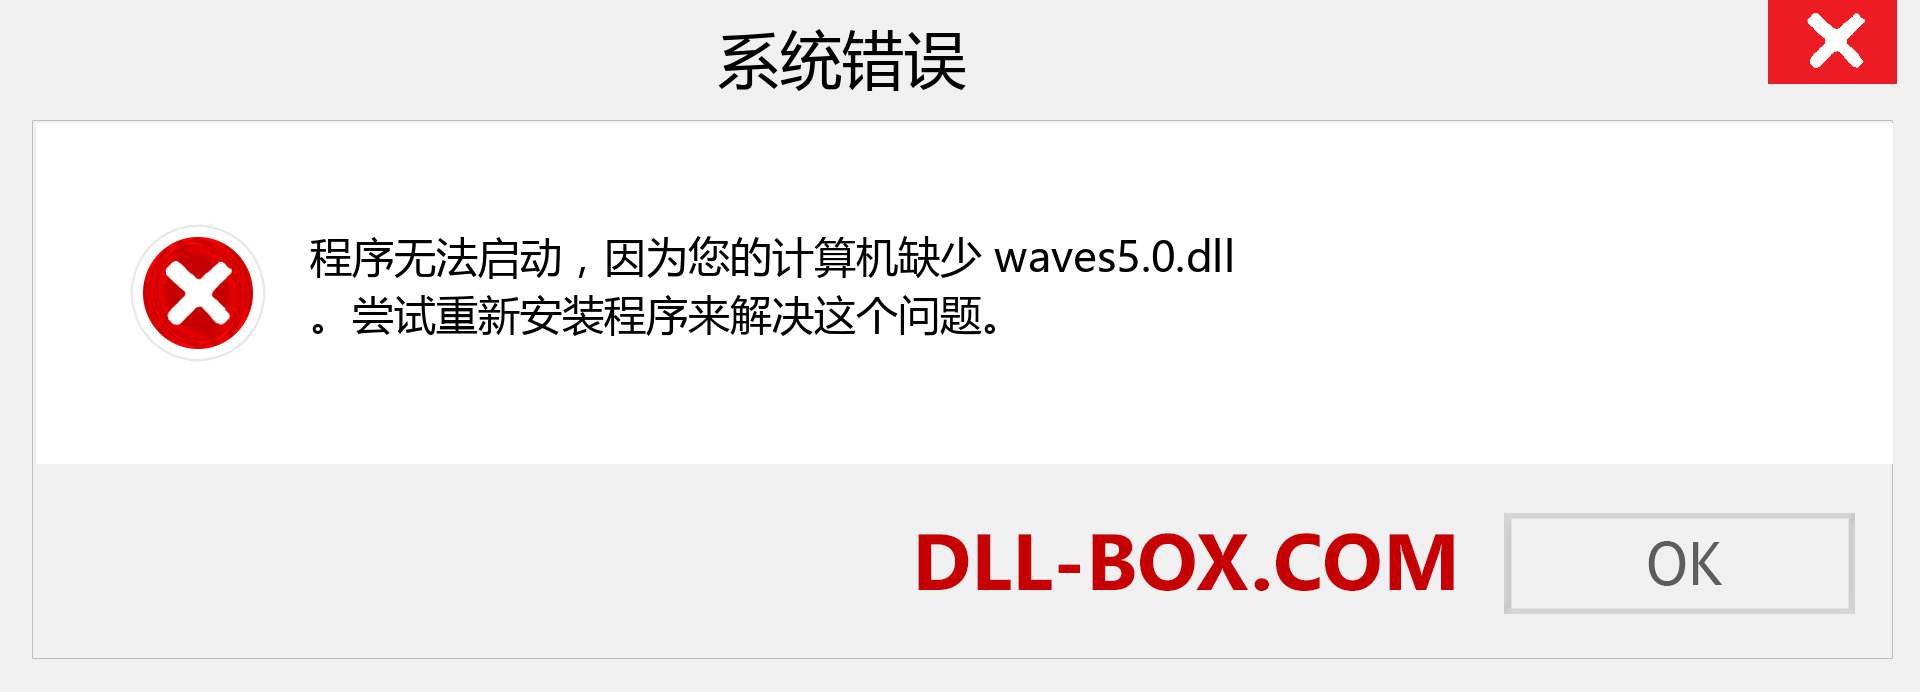 waves5.0.dll 文件丢失？。 适用于 Windows 7、8、10 的下载 - 修复 Windows、照片、图像上的 waves5.0 dll 丢失错误